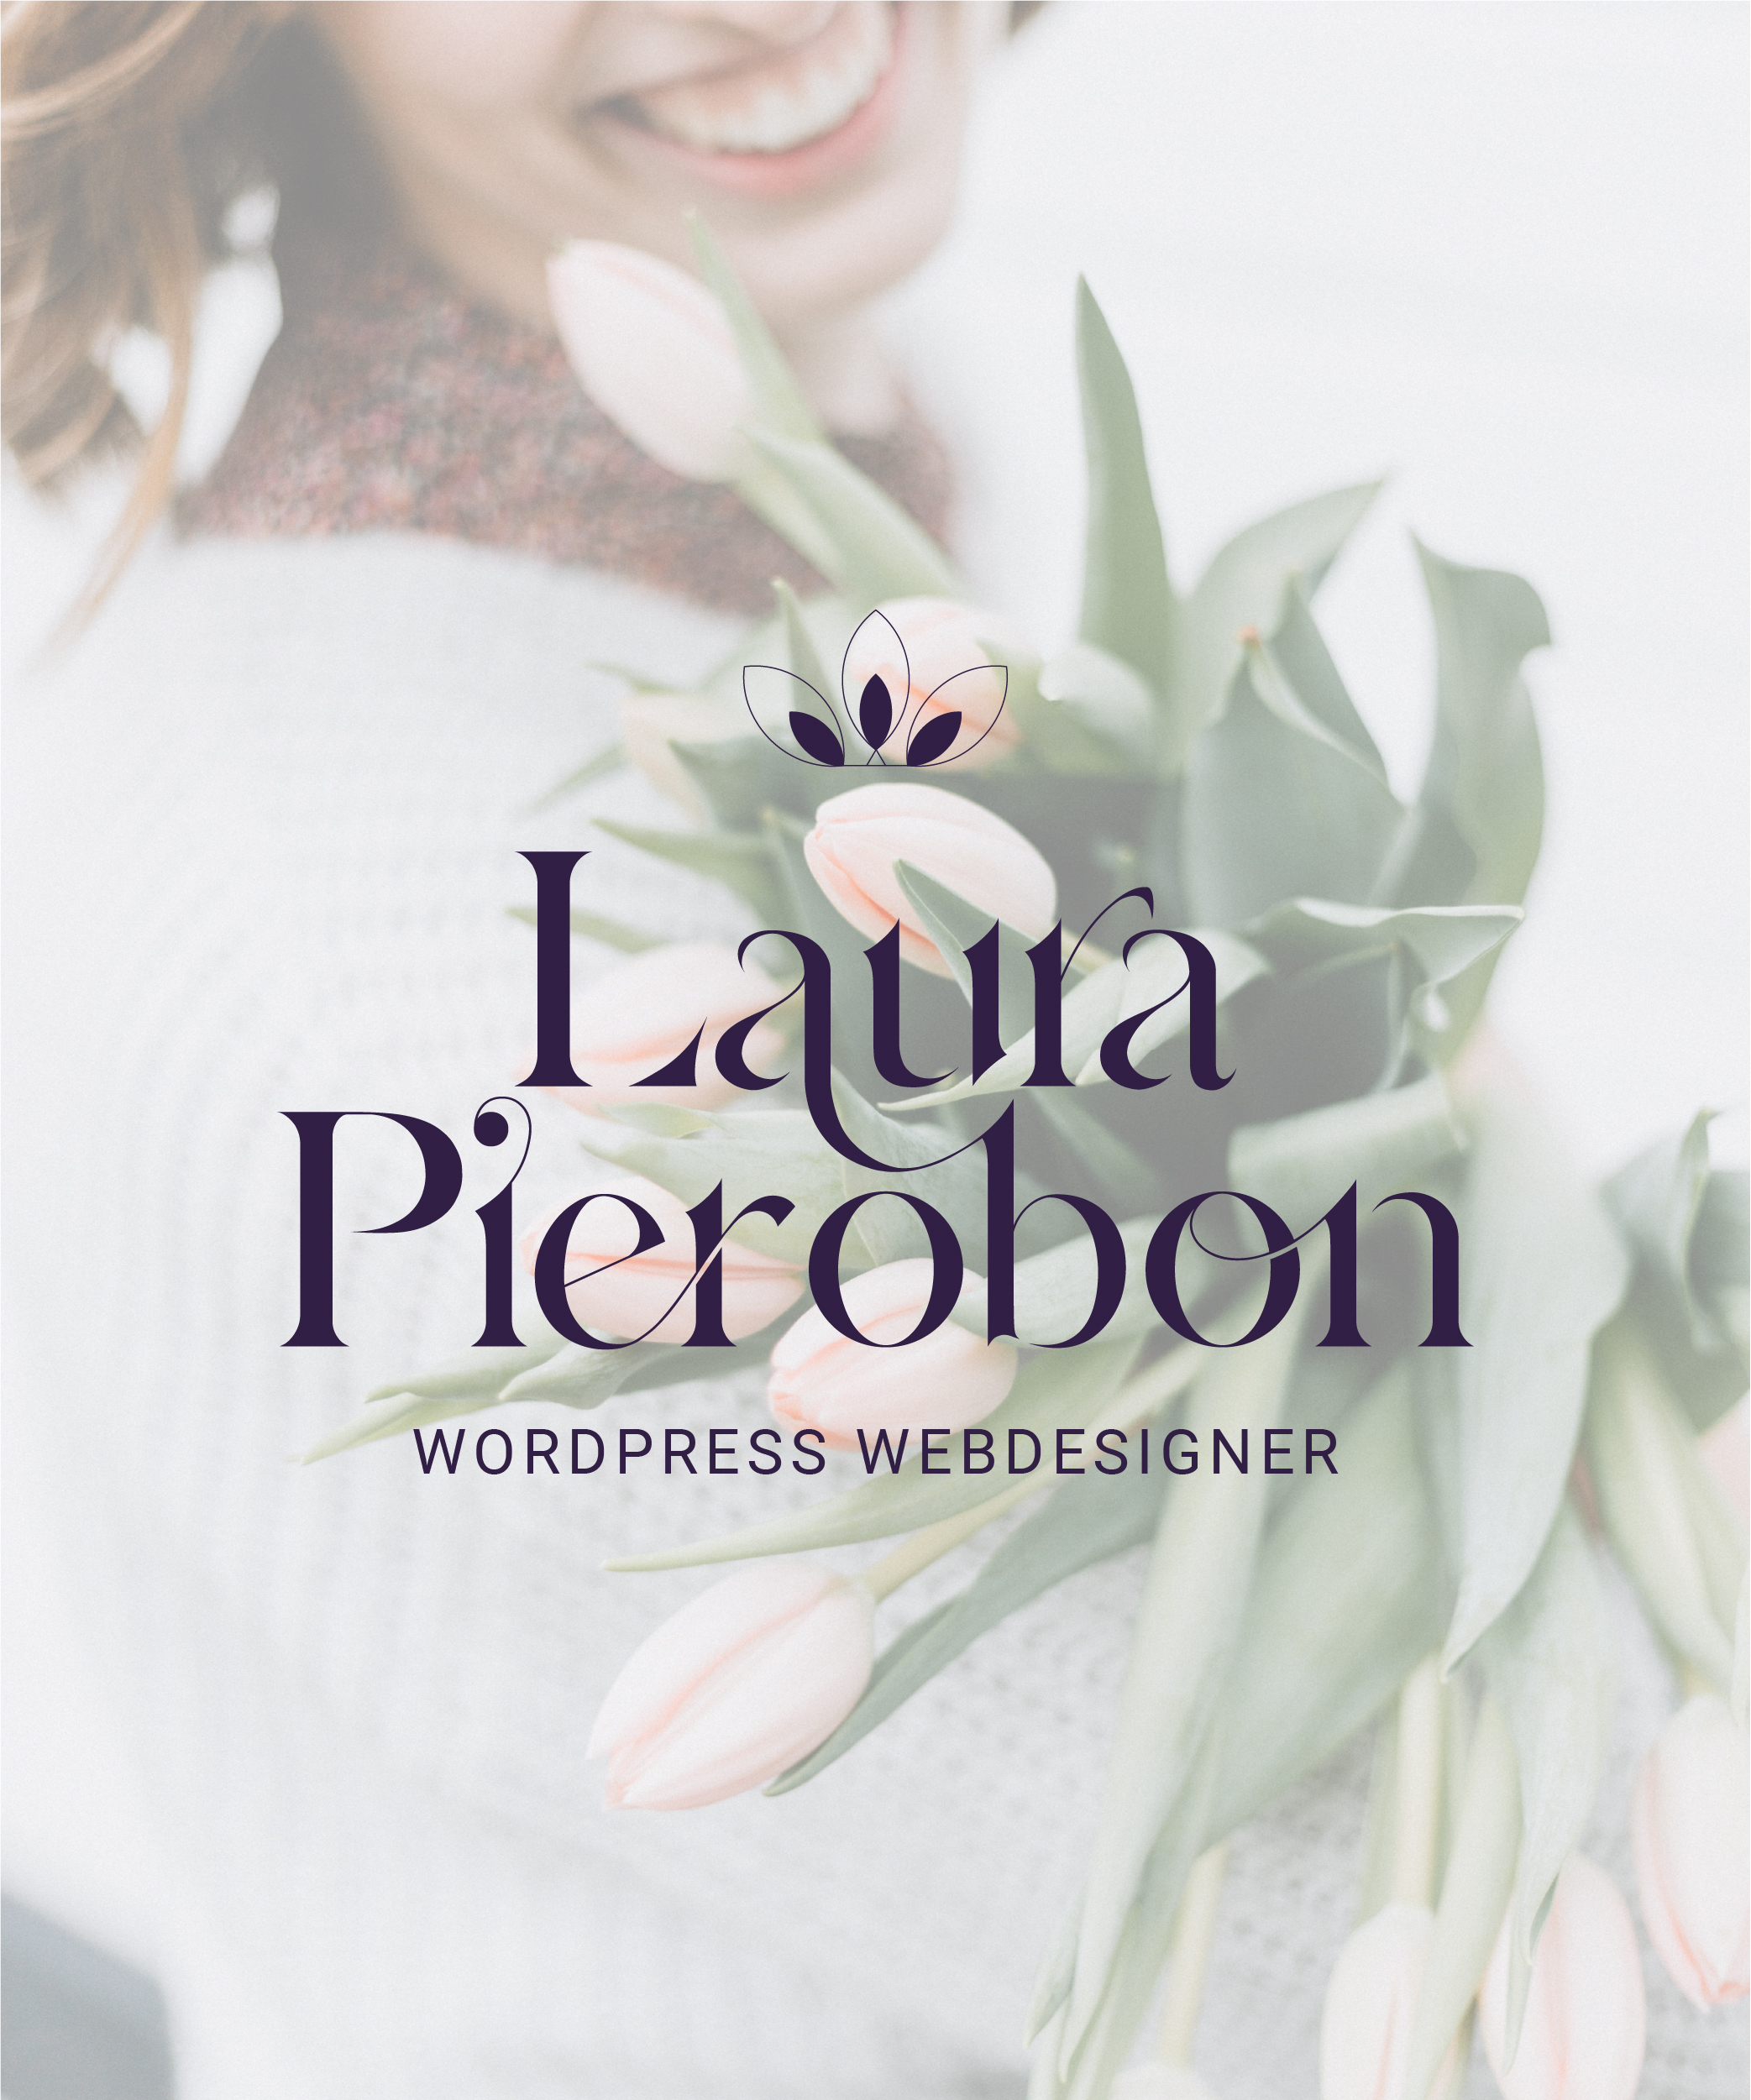 Laura Pierobon